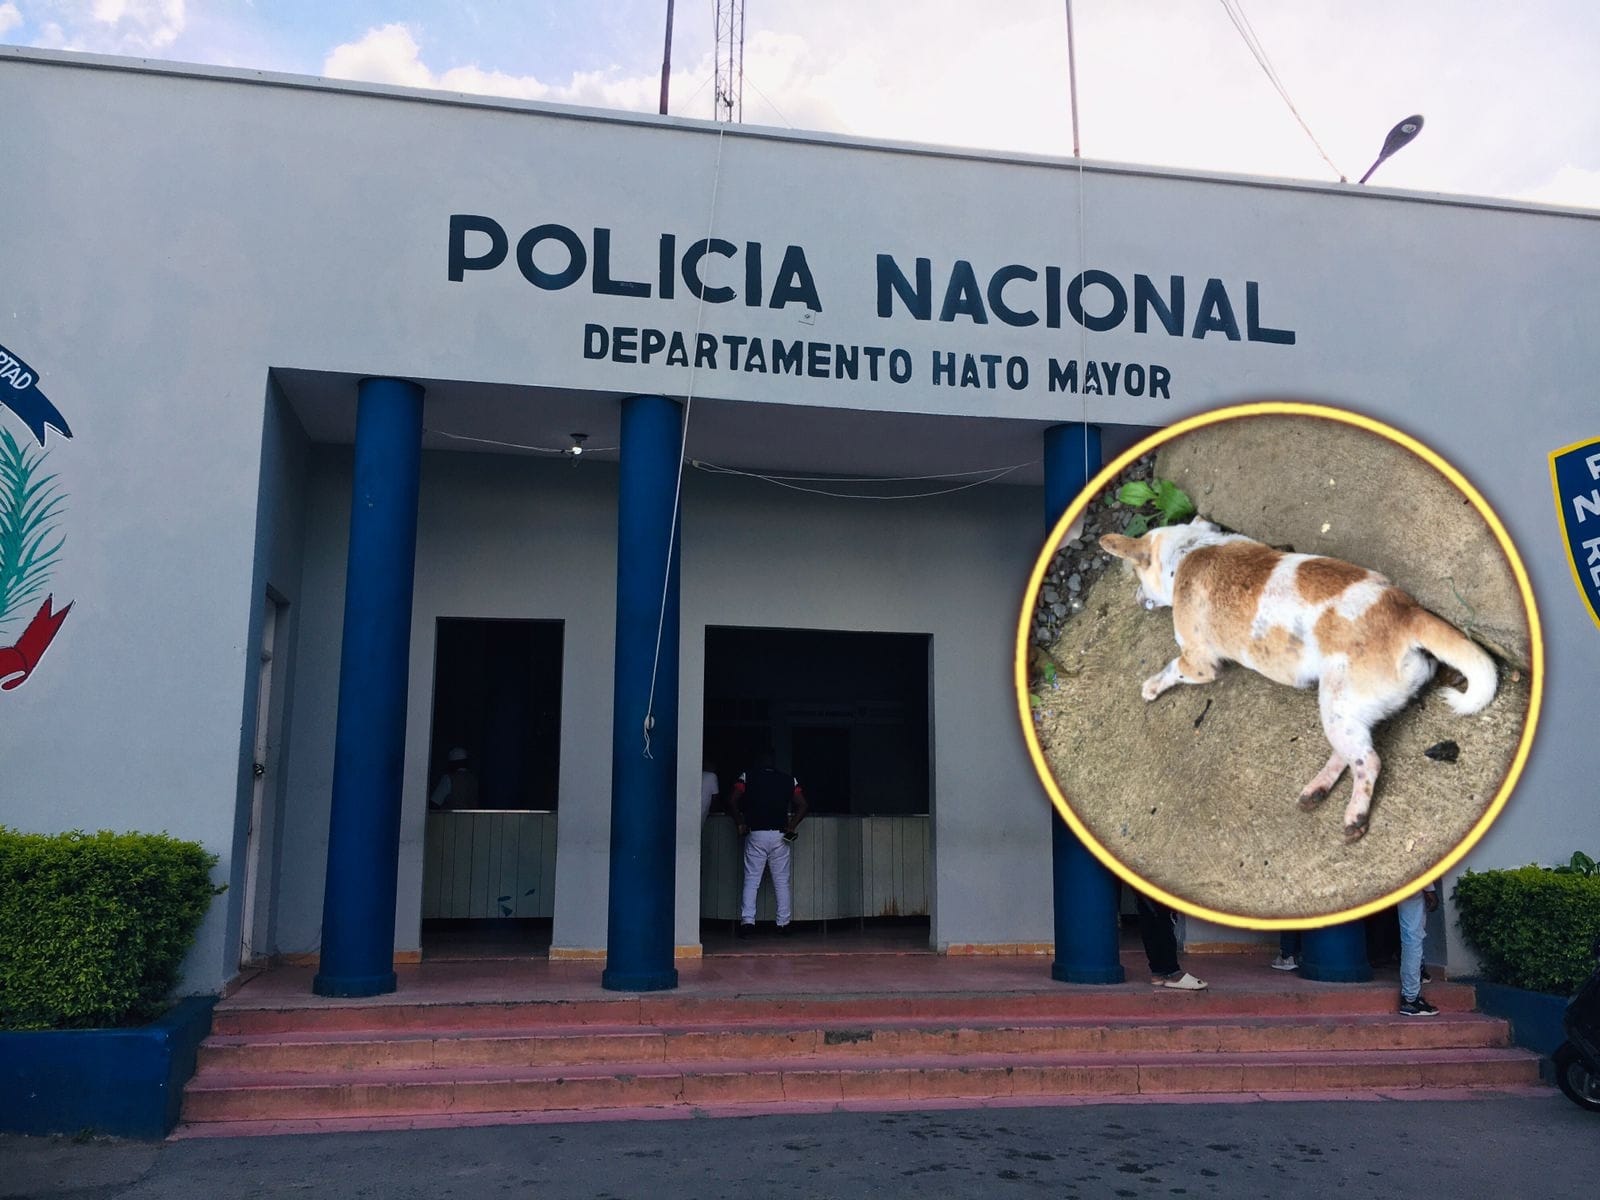 Desaprensivos envenenan masiva cantidad perros en Los Polanco de Hato Mayor; habitantes temen esto desate una ola de robos